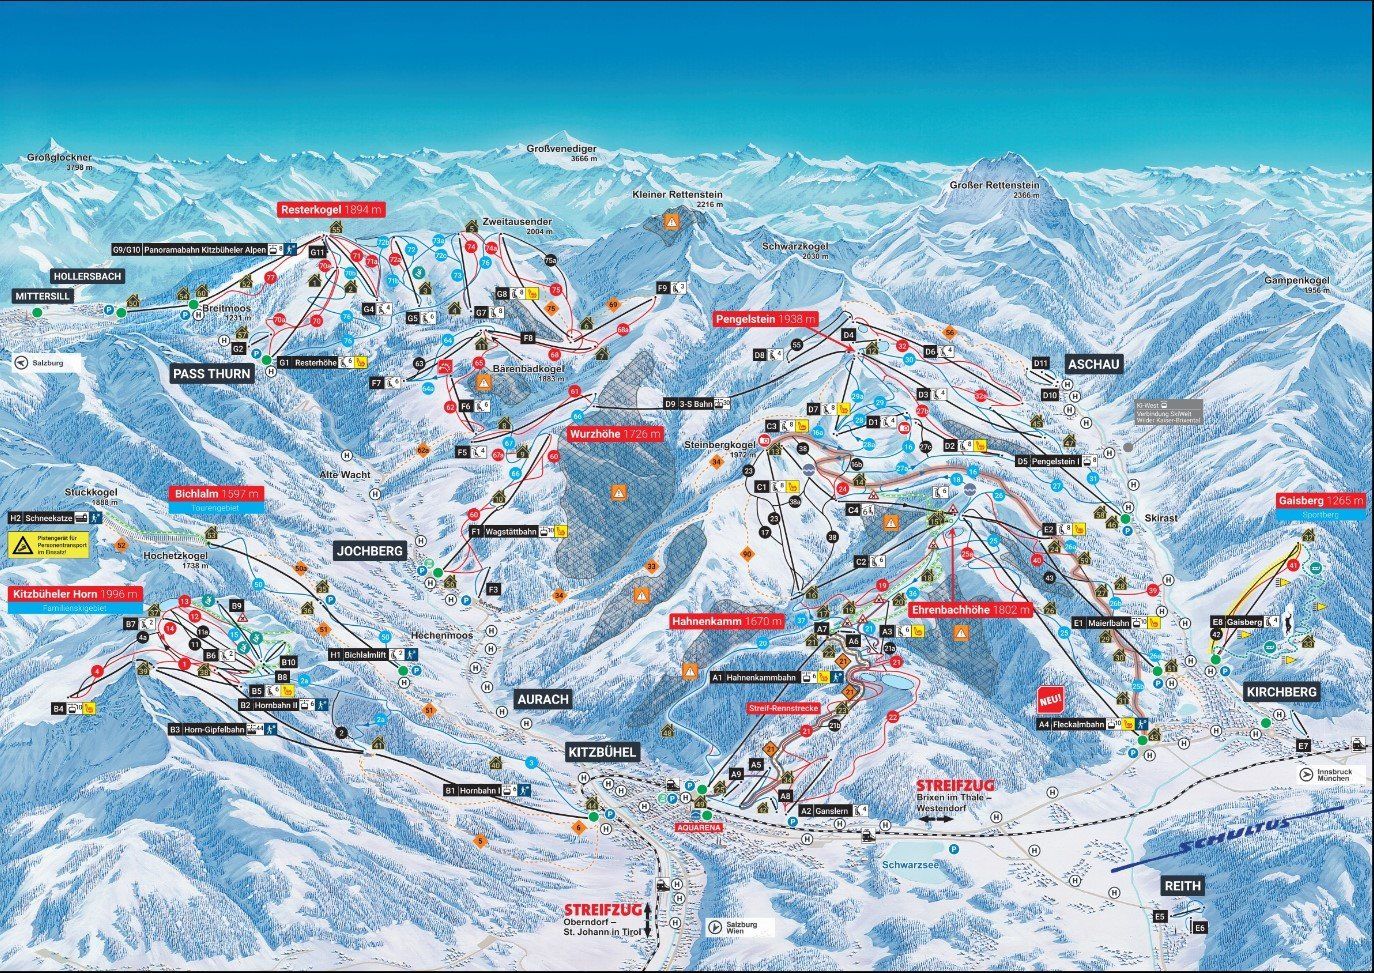 Pistenplan / Karte Skigebiet Pass Thurn, Österreich